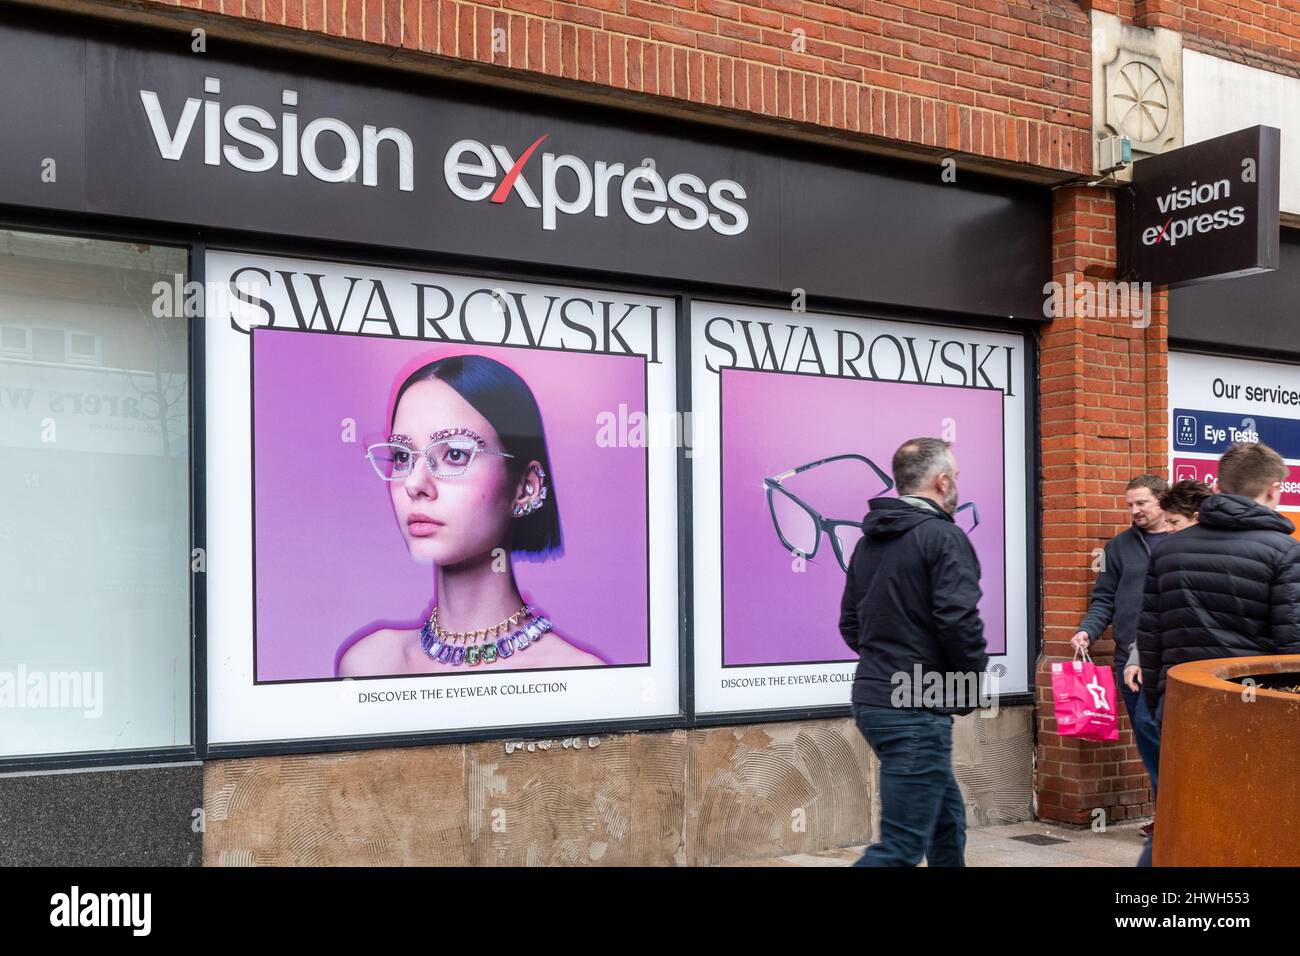 Personas que pasan por los anuncios de Swarovski en una tienda de óptica Vision Express, centro de Camberley, Surrey, Inglaterra, Reino Unido Foto de stock